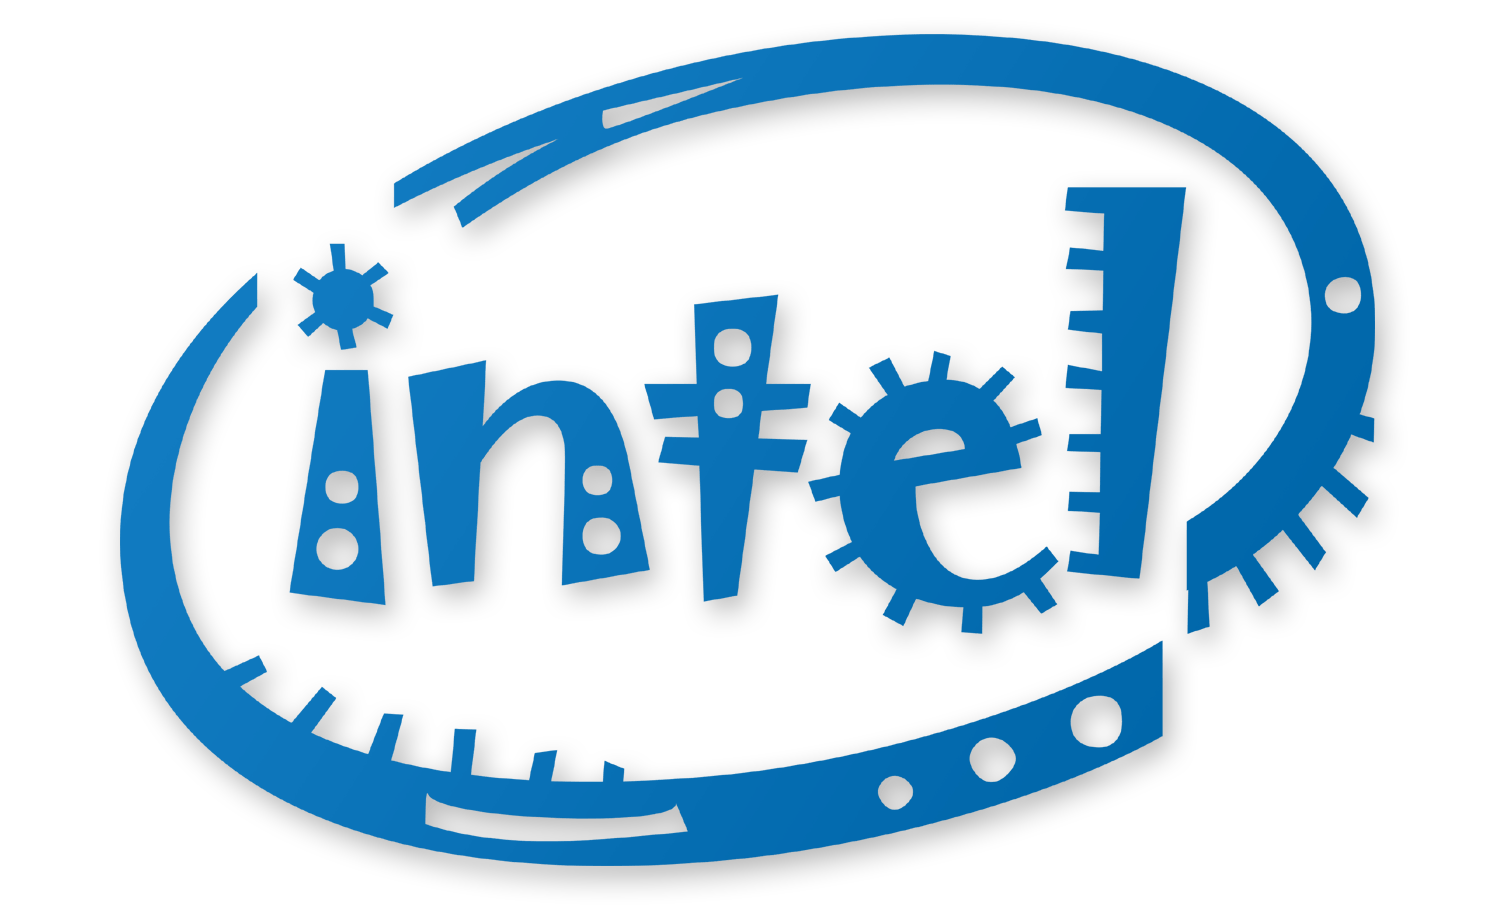 2013 Intel Inside Logo - Intel Png Logo - Free Transparent PNG Logos